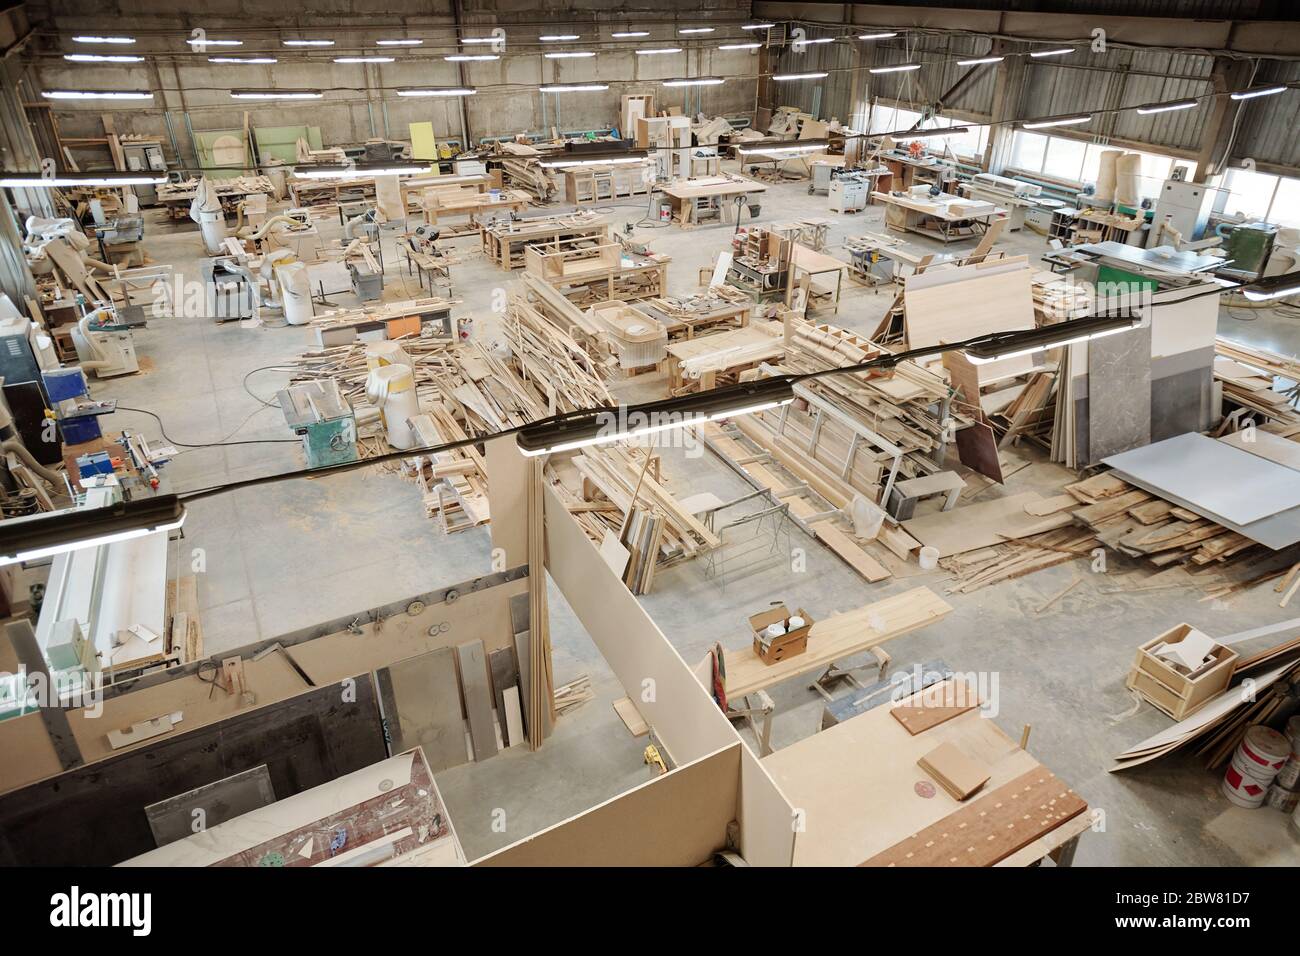 Das Innere der großen Werkstatt der zeitgenössischen Möbelfabrik mit Arbeitsplätzen, die aus Werkbänken mit Arbeitsmaterialien bestehen Stockfoto